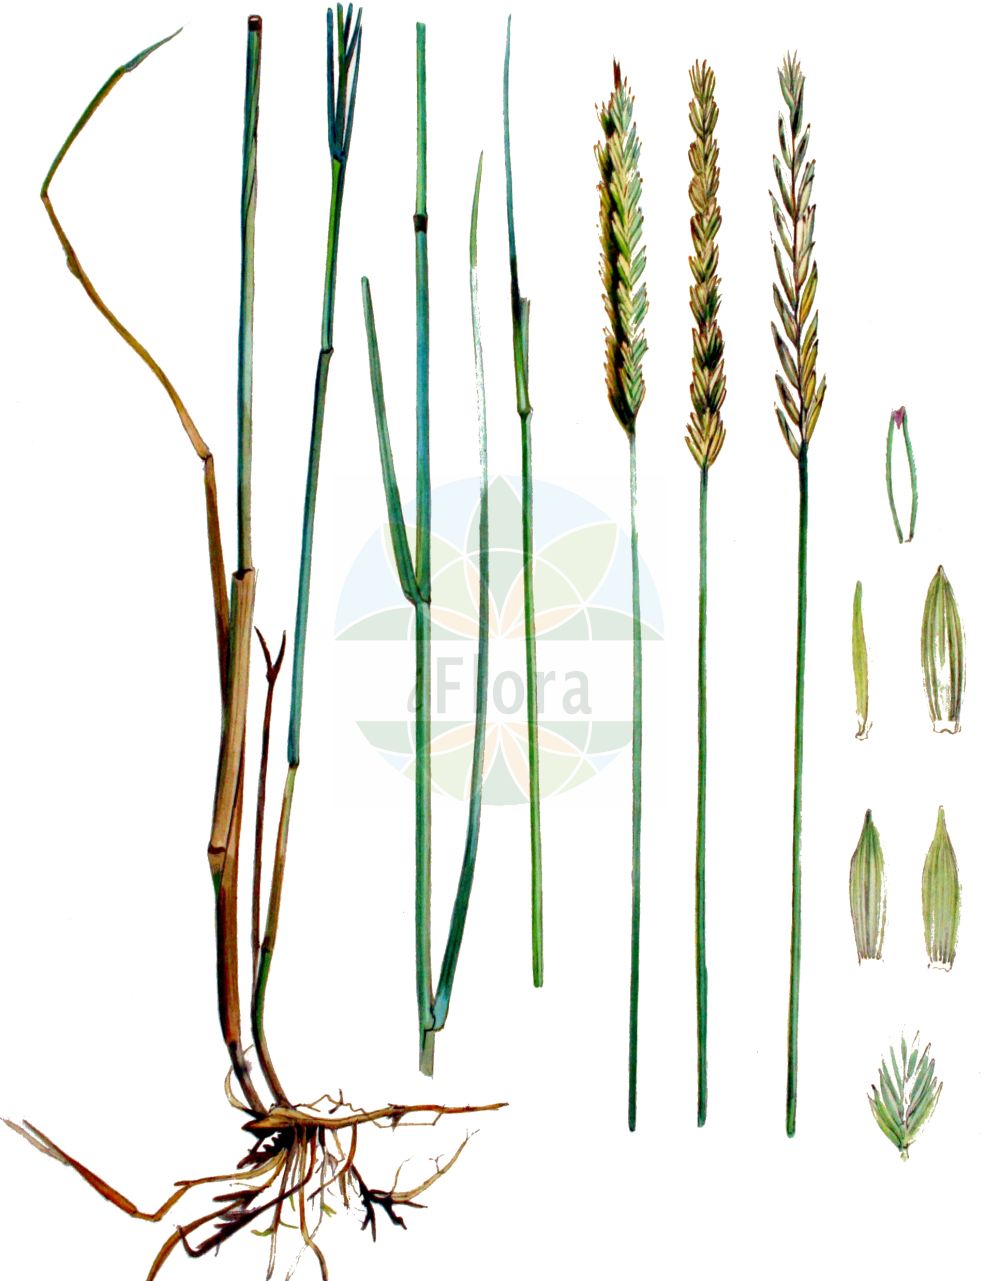 Historische Abbildung von Elytrigia repens (Kriech-Quecke - Common Couch). Das Bild zeigt Blatt, Bluete, Frucht und Same. ---- Historical Drawing of Elytrigia repens (Kriech-Quecke - Common Couch). The image is showing leaf, flower, fruit and seed.(Elytrigia repens,Kriech-Quecke,Common Couch,Agropyron caesium,Agropyron caldesii,Agropyron maroccanum,Agropyron repens,Elymus caesius,Elymus repens,Elytrigia repens,Triticum littoreum,Triticum repens,Kriech-Quecke,Gewoehnliche Quecke i. e. S.,Strand-Kriech-Quecke,Common Couch,Couch Grass,Tick Quackgrass,Common Couchgrass,Creeping Wheat Grass,Dog's Grass,Quackgrass,Quickgrass,Quitchgrass,Twitch,Twitchgrass,Elytrigia,Poaceae,Süßgräser,Grass family,Blatt,Bluete,Frucht,Same,leaf,flower,fruit,seed,Kops (1800-1934))